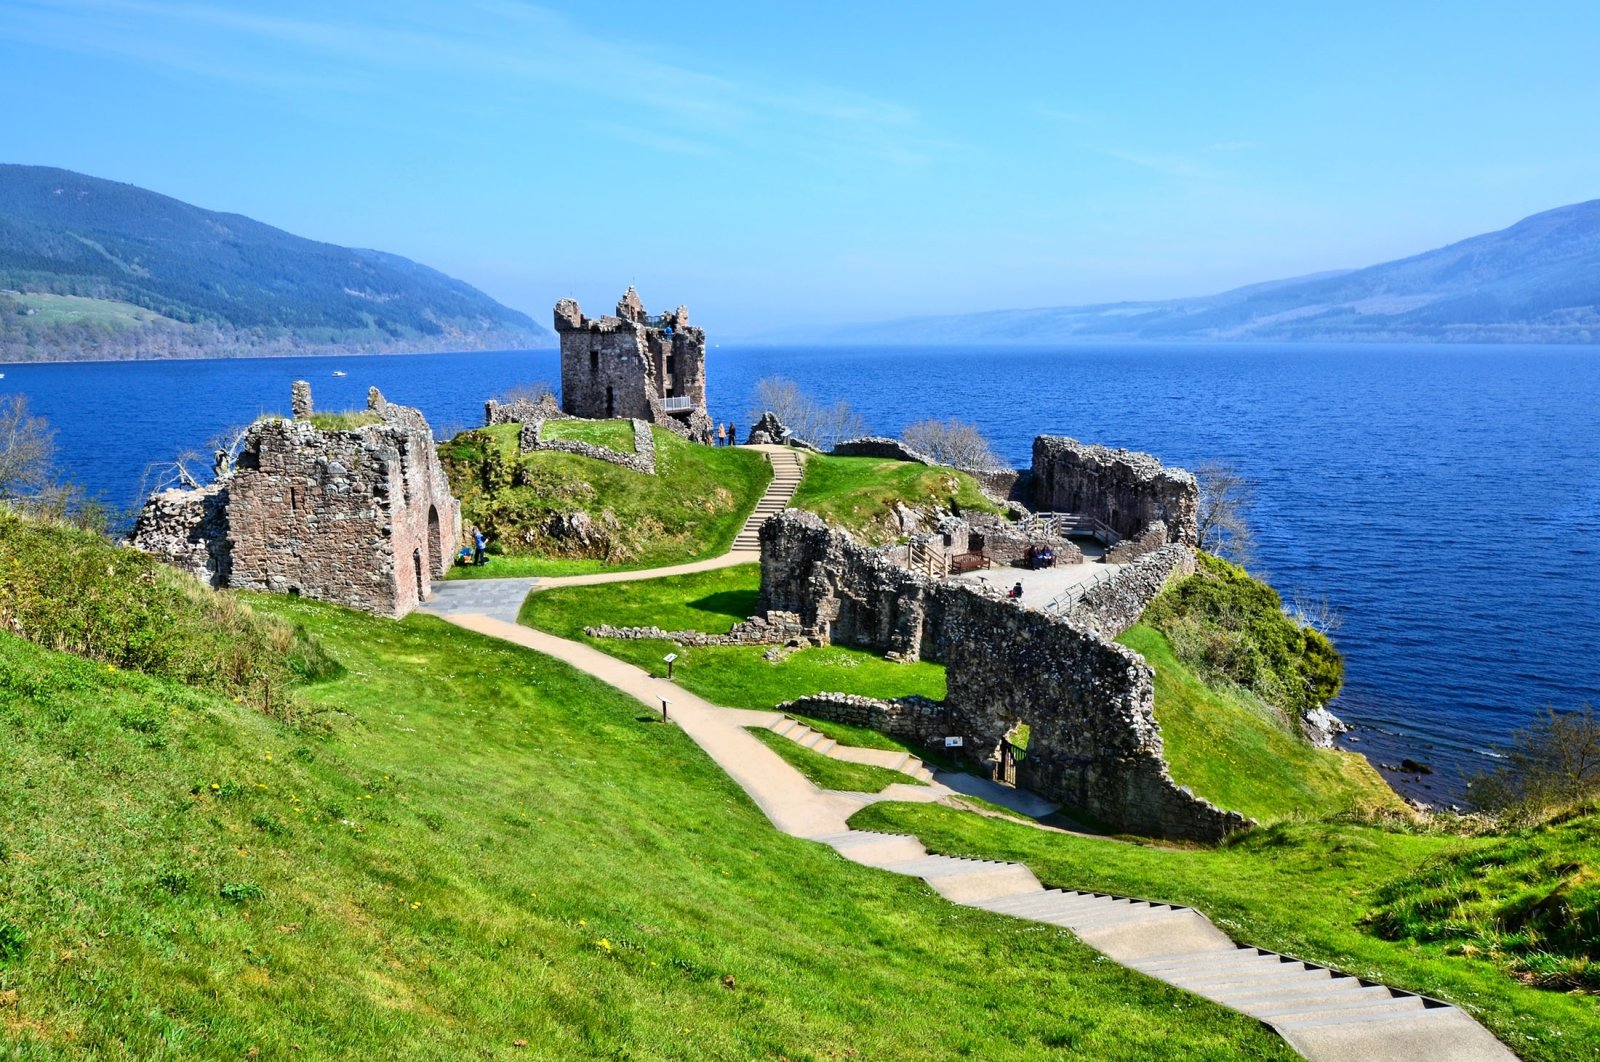 Ruins of Urquhart Castle along Loch Ness, Scotland. (Shutterstock Photo)